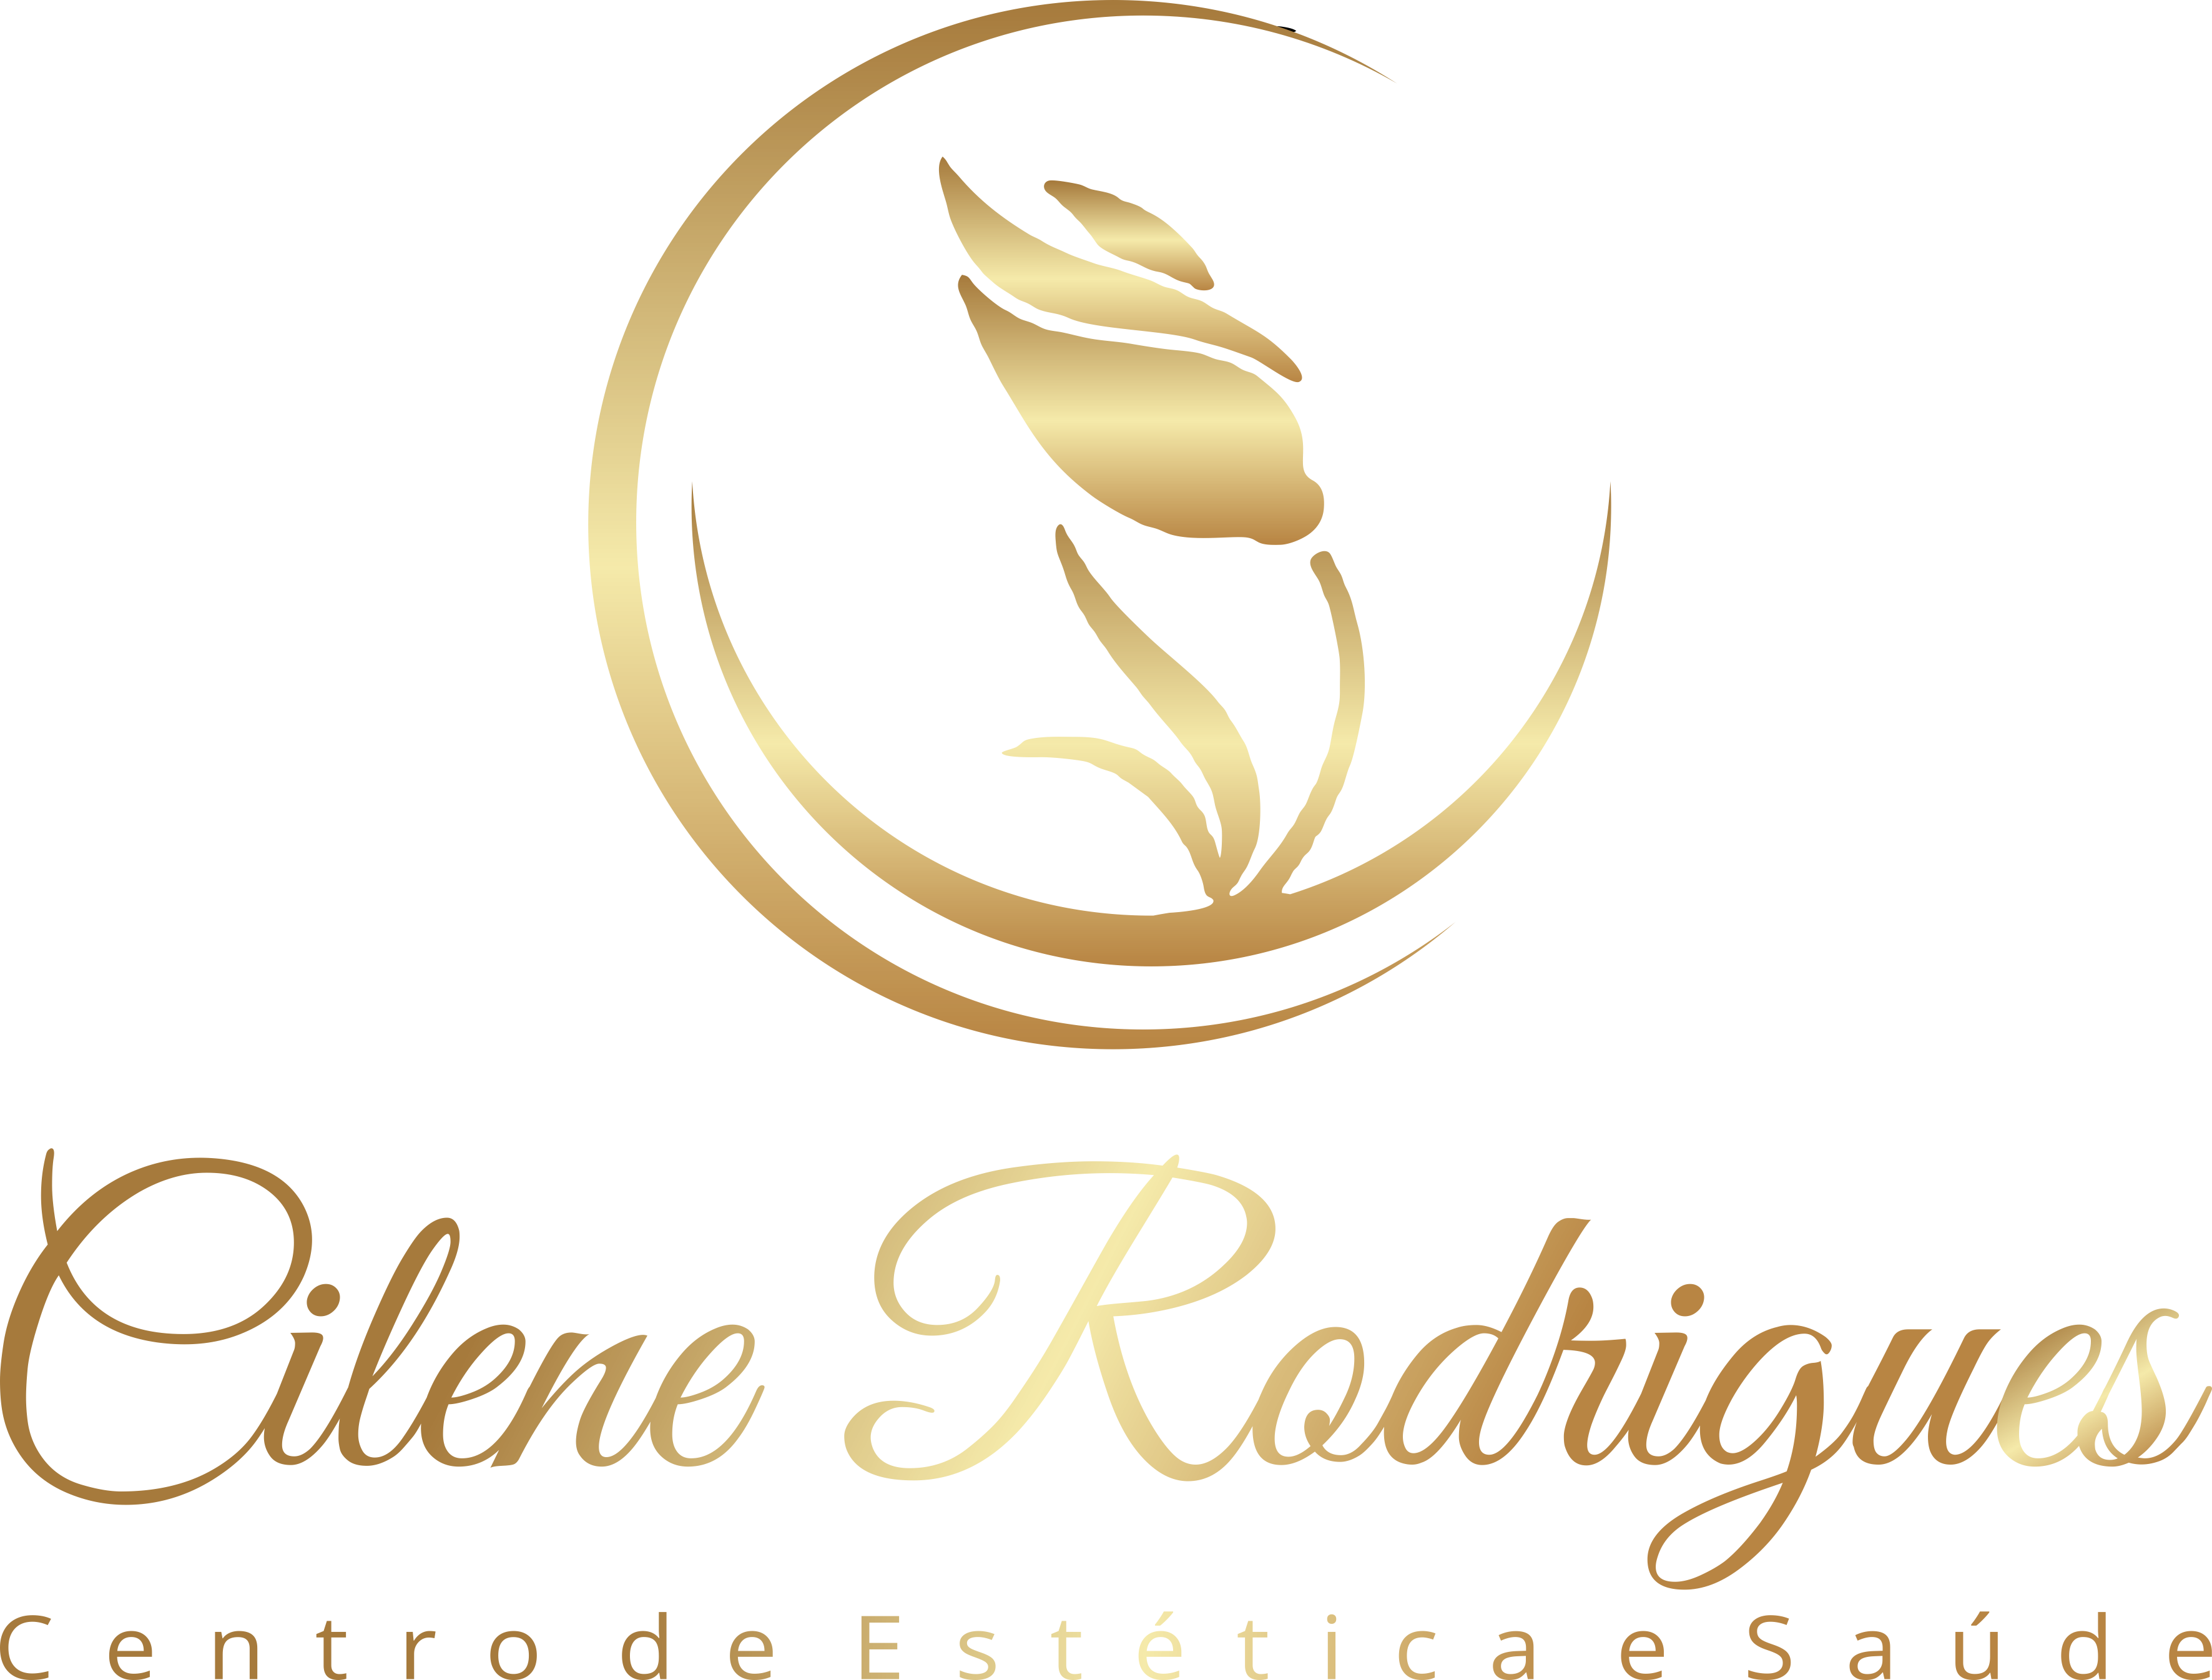 Cilene Rodrigues